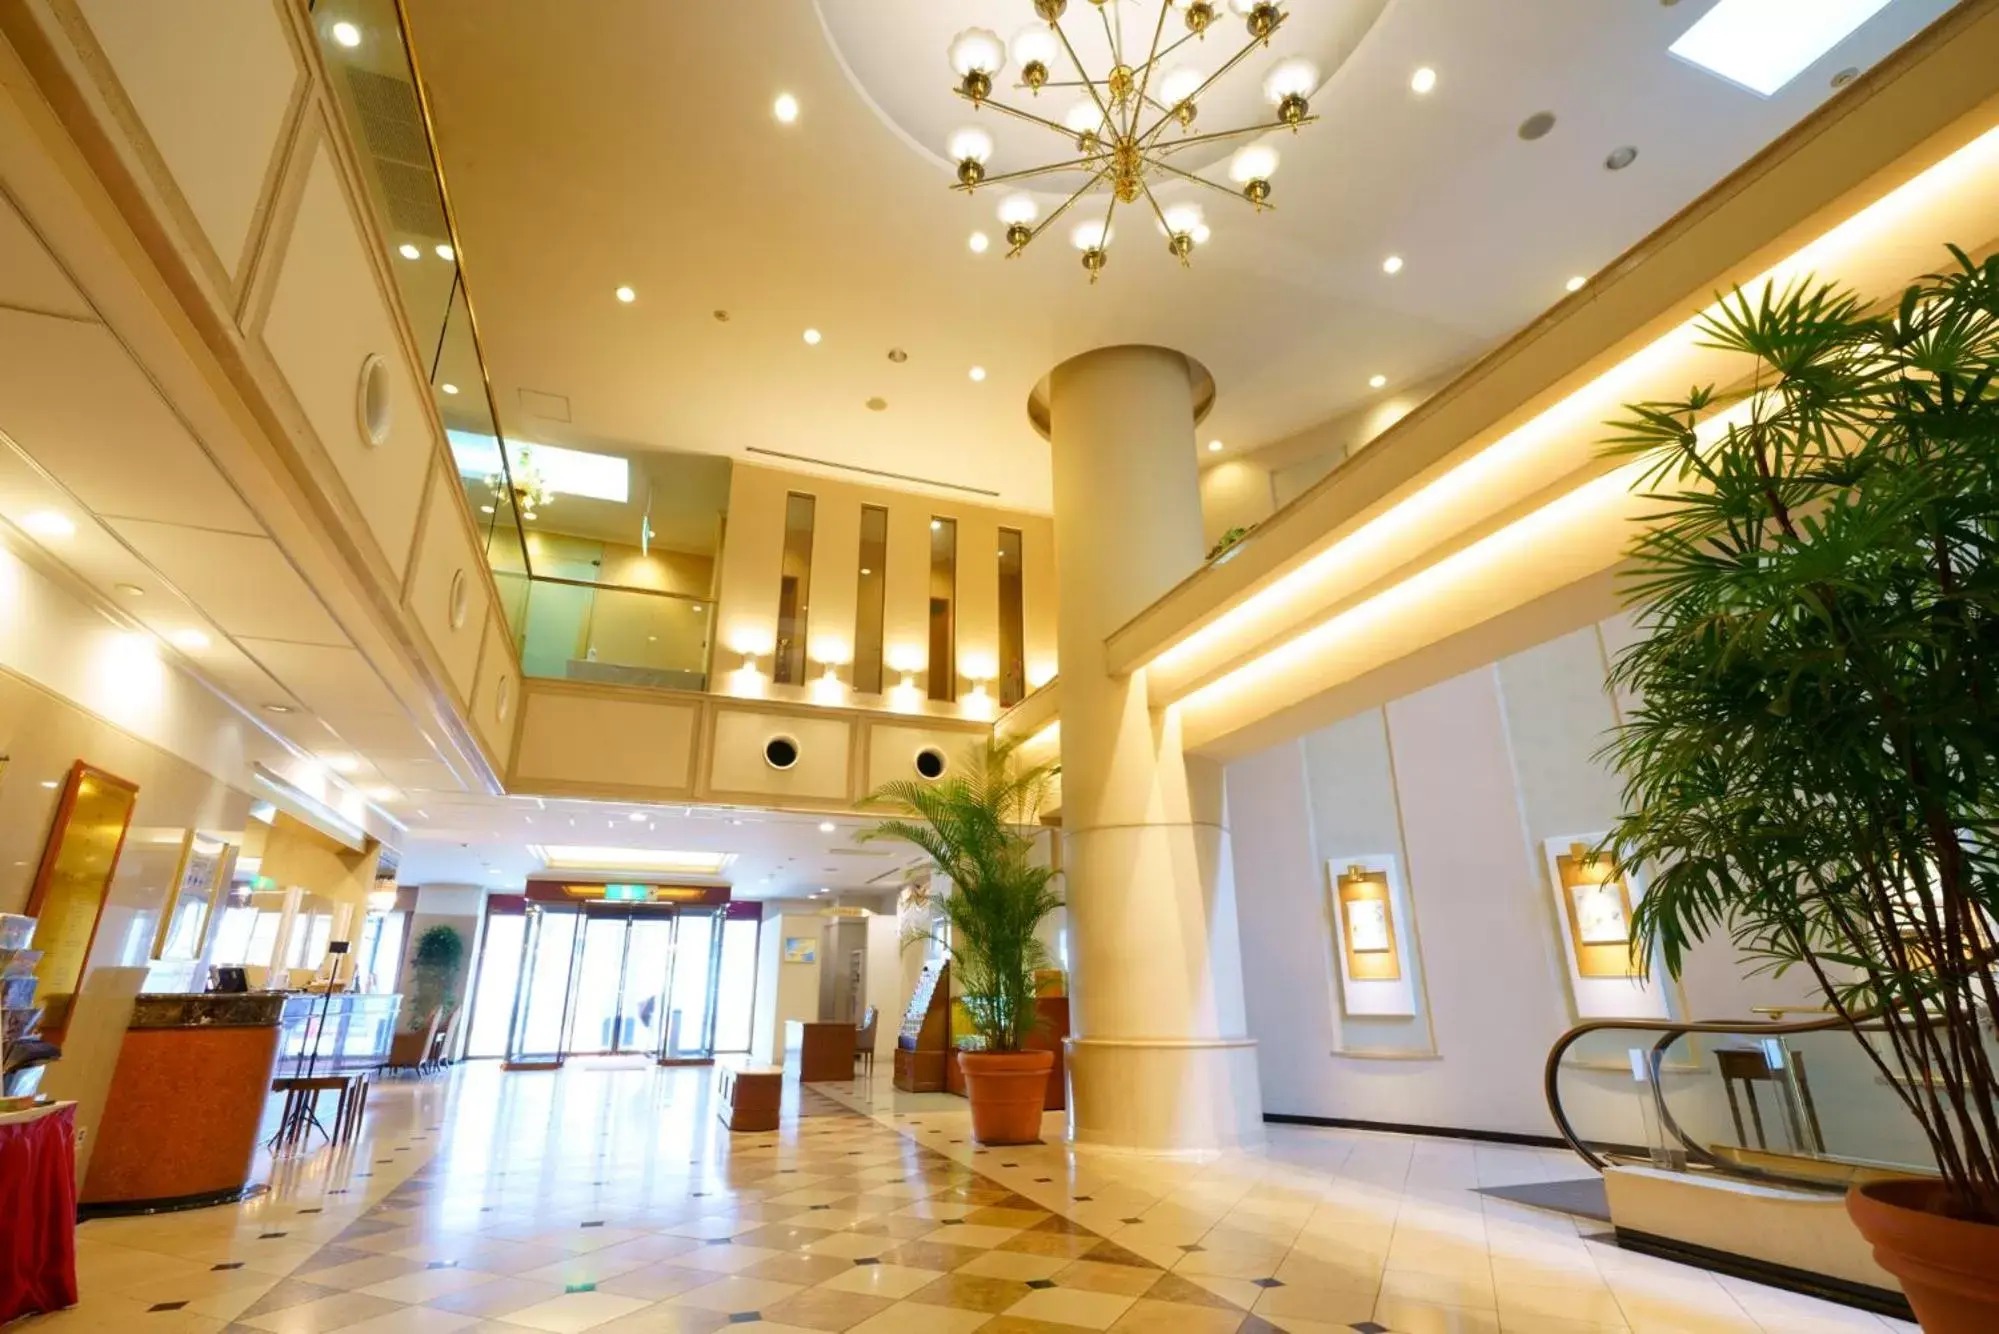 Lobby or reception, Lobby/Reception in Sasebo Washington Hotel